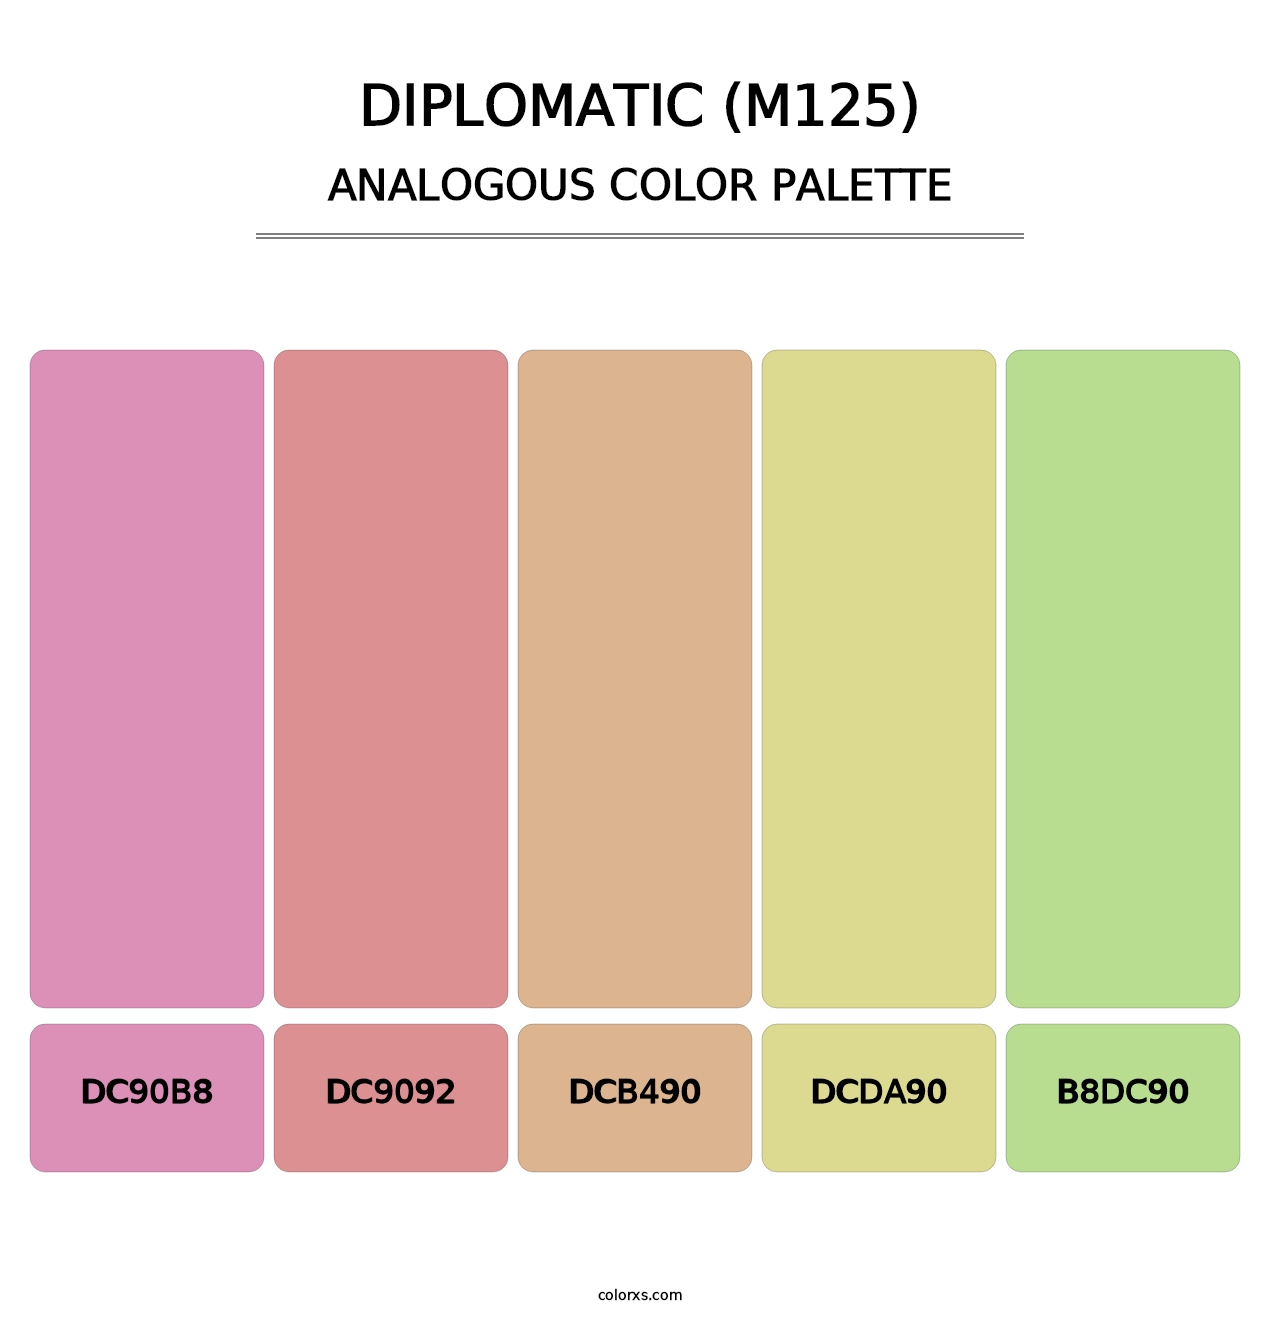 Diplomatic (M125) - Analogous Color Palette